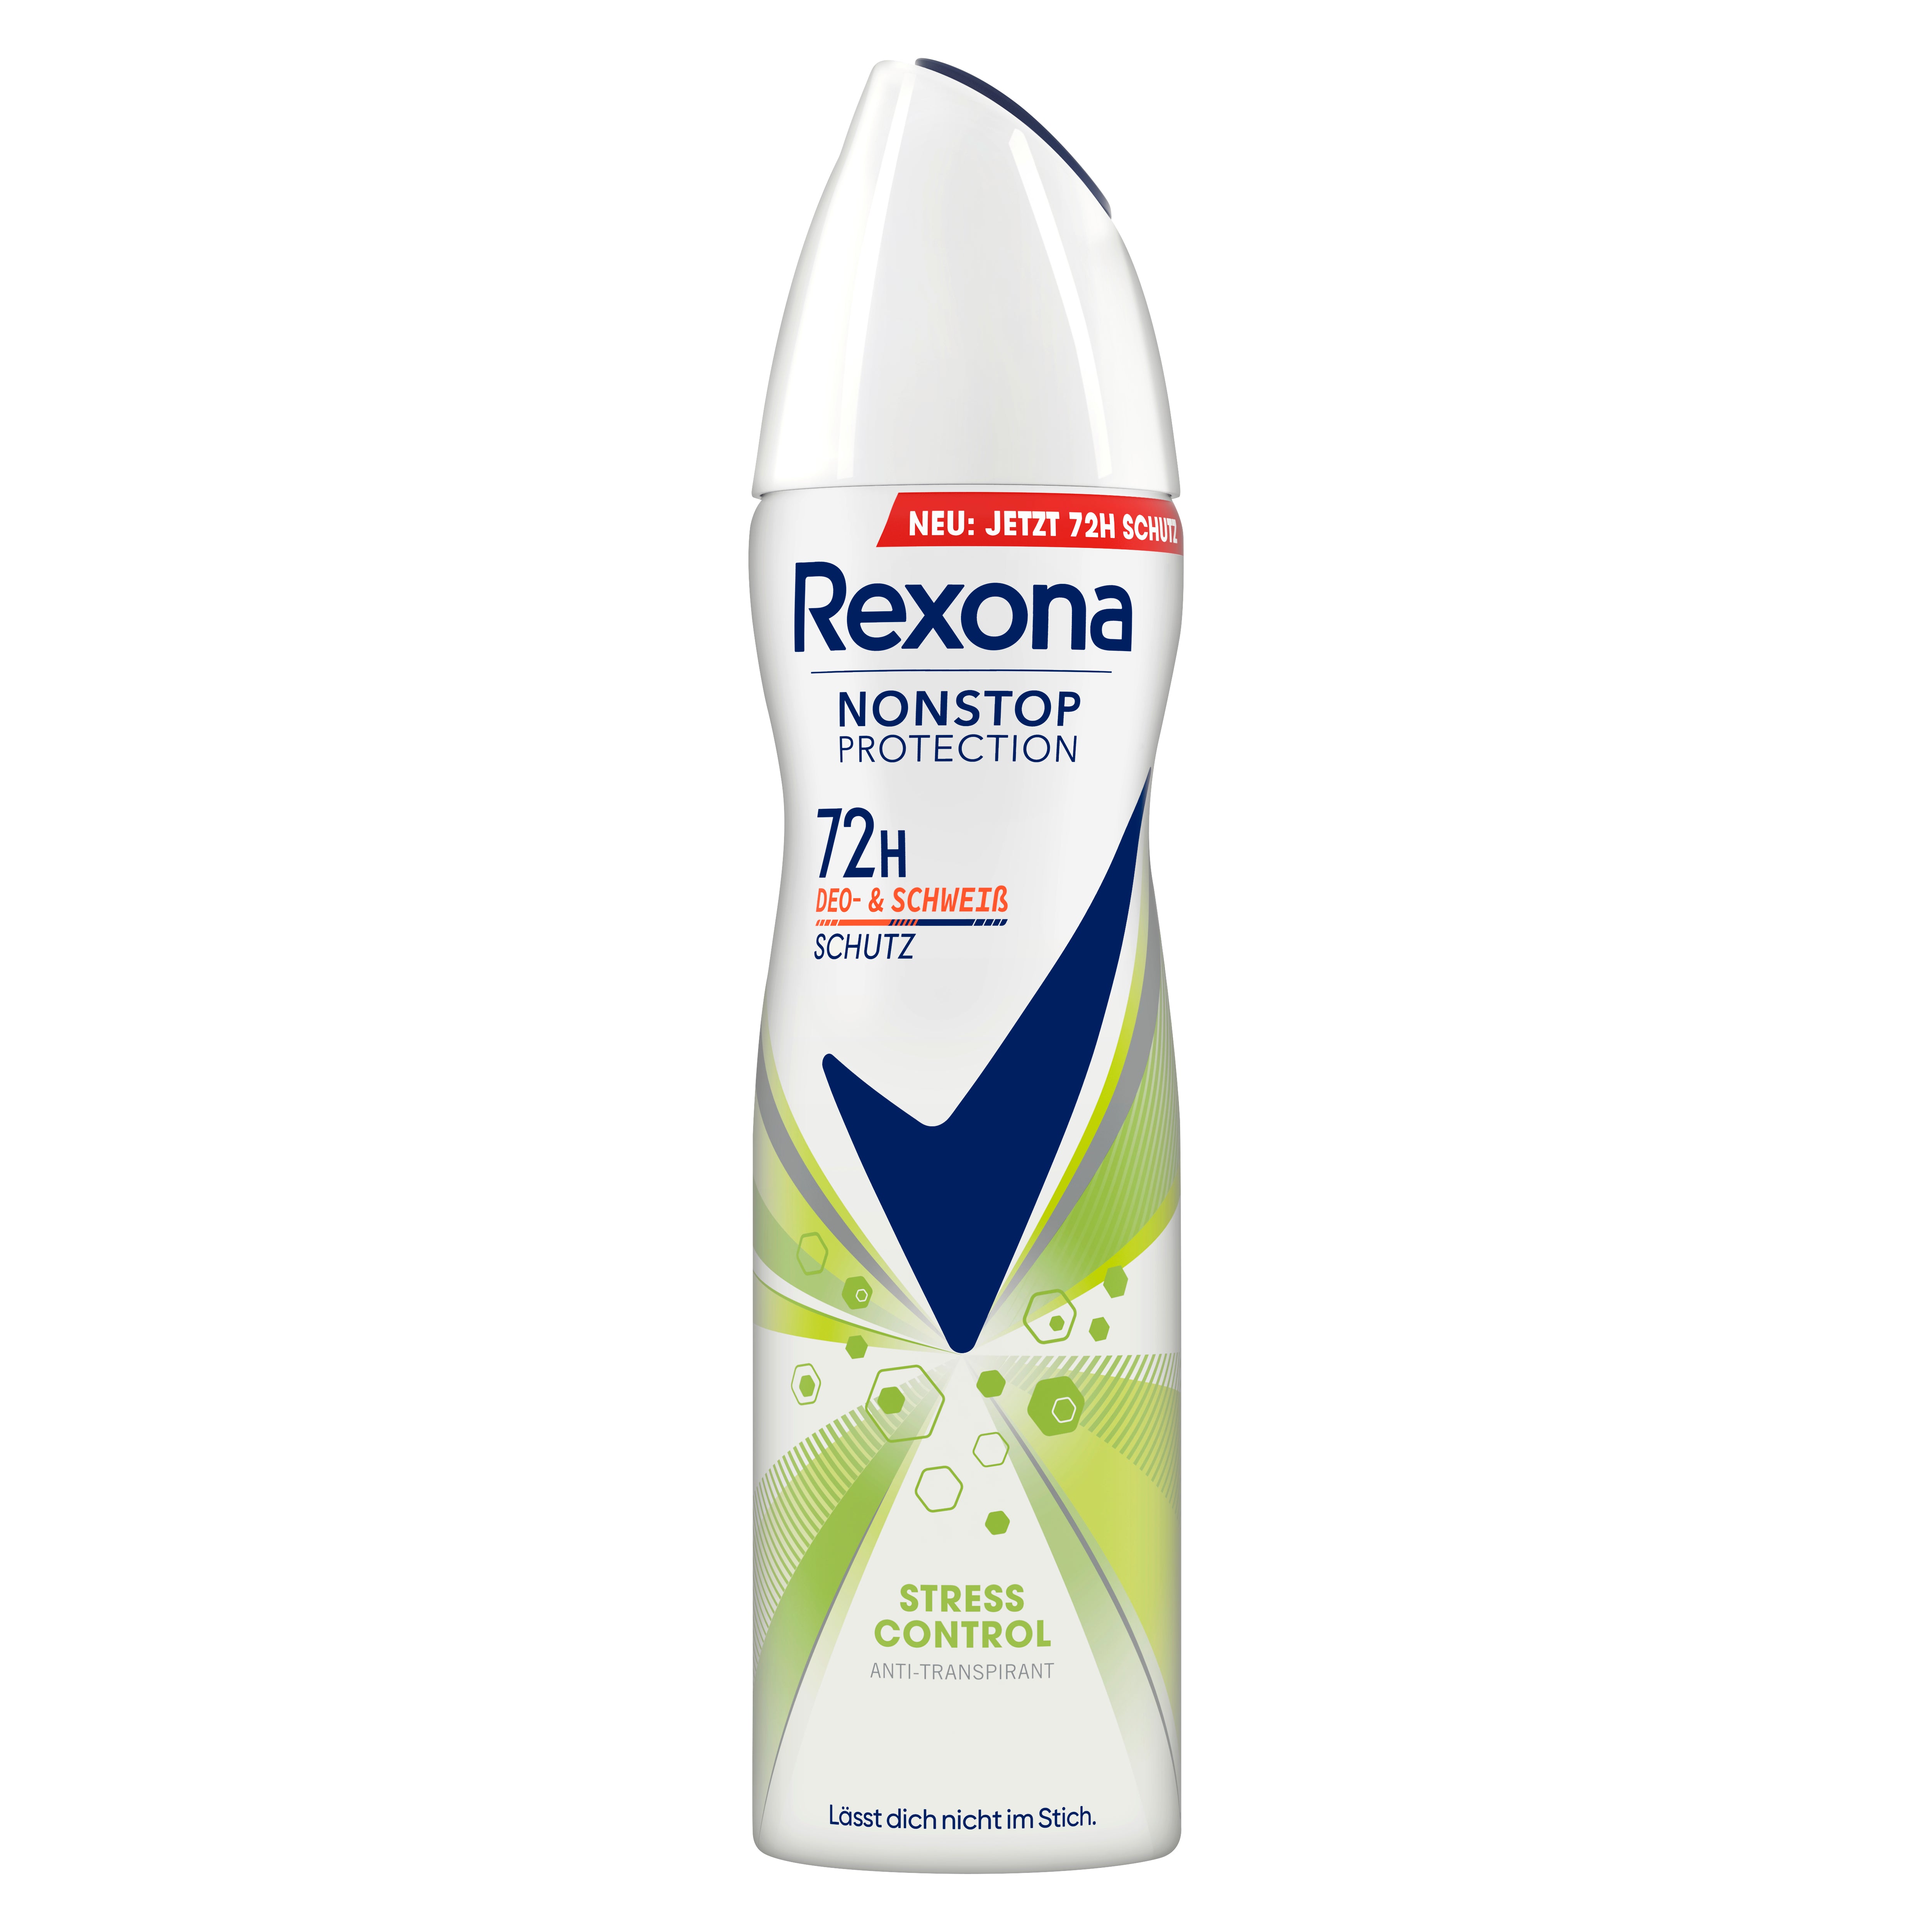 Rexona Nonstop Protection Deospray Stress Control Anti Transpirant mit 72 Stunden Schutz vor Schweiß und Körpergeruch 150 ml